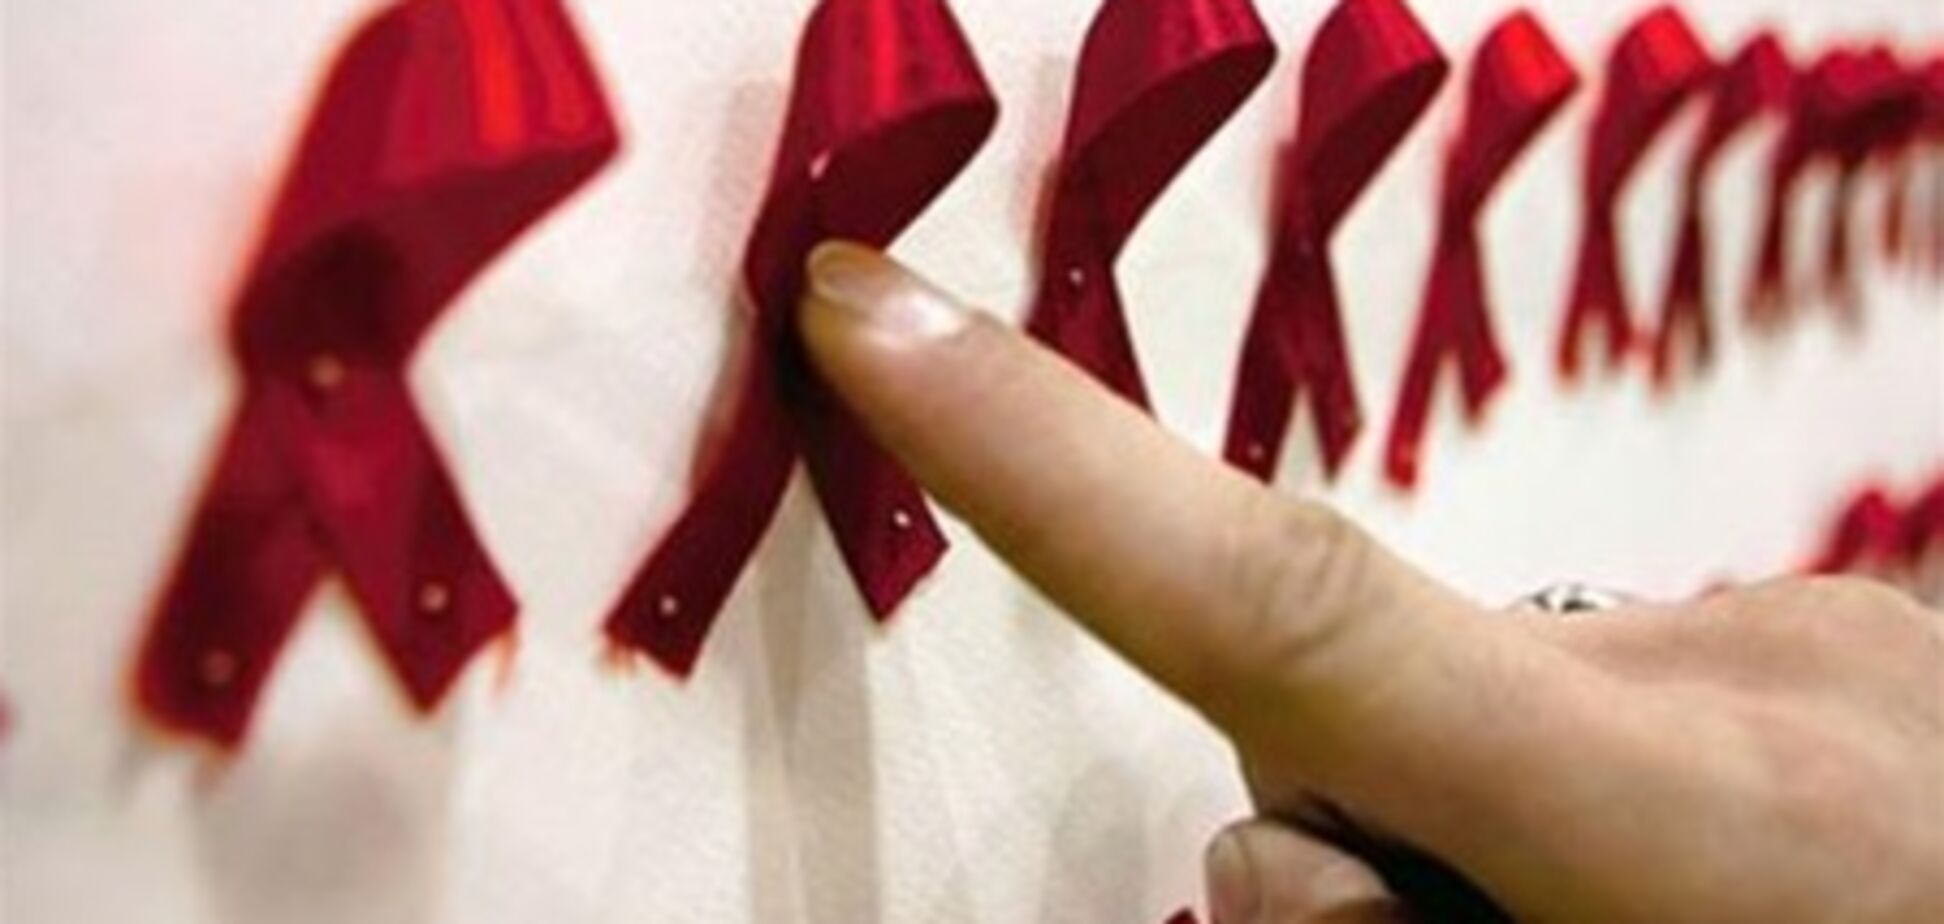 Кожна десята ВІЛ-інфекція в світі від ін'єкційних наркотиків